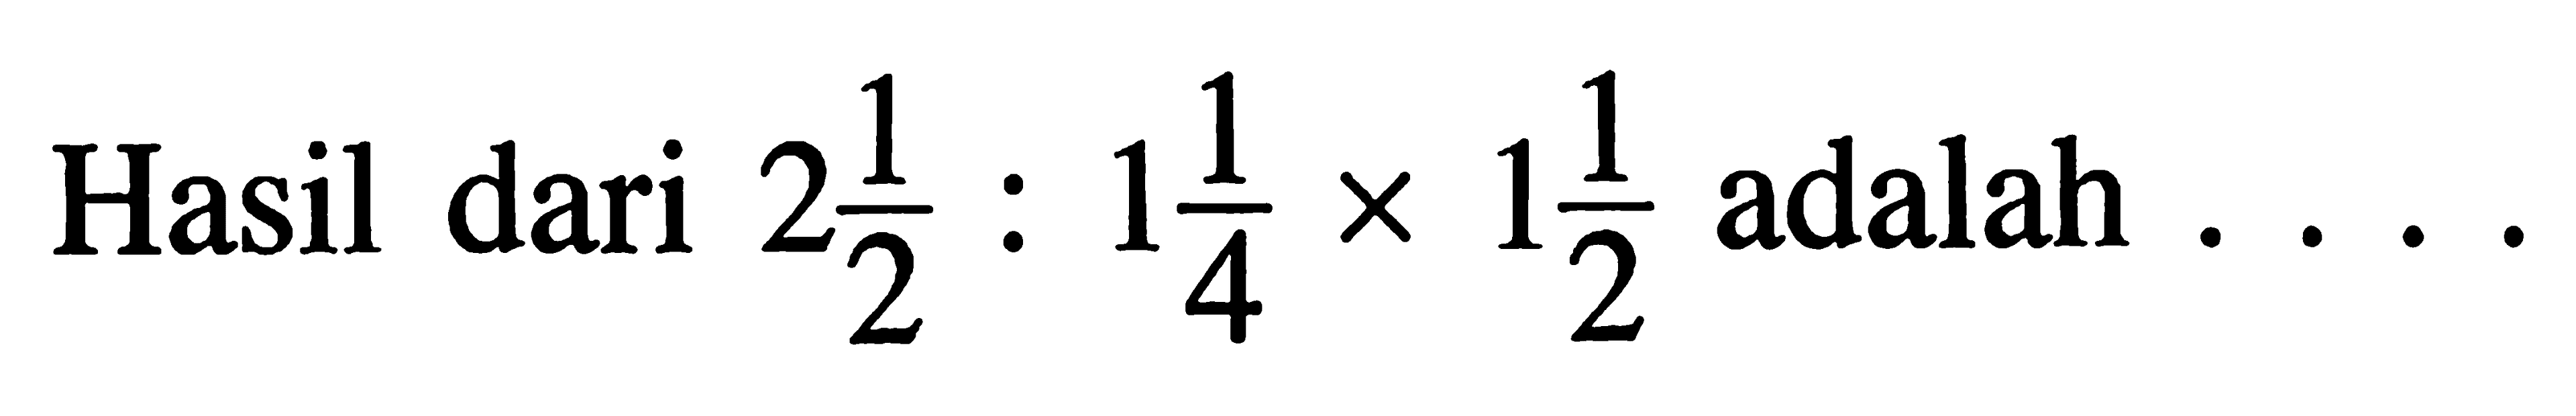 12 adalah 22 14 Hasil dari X